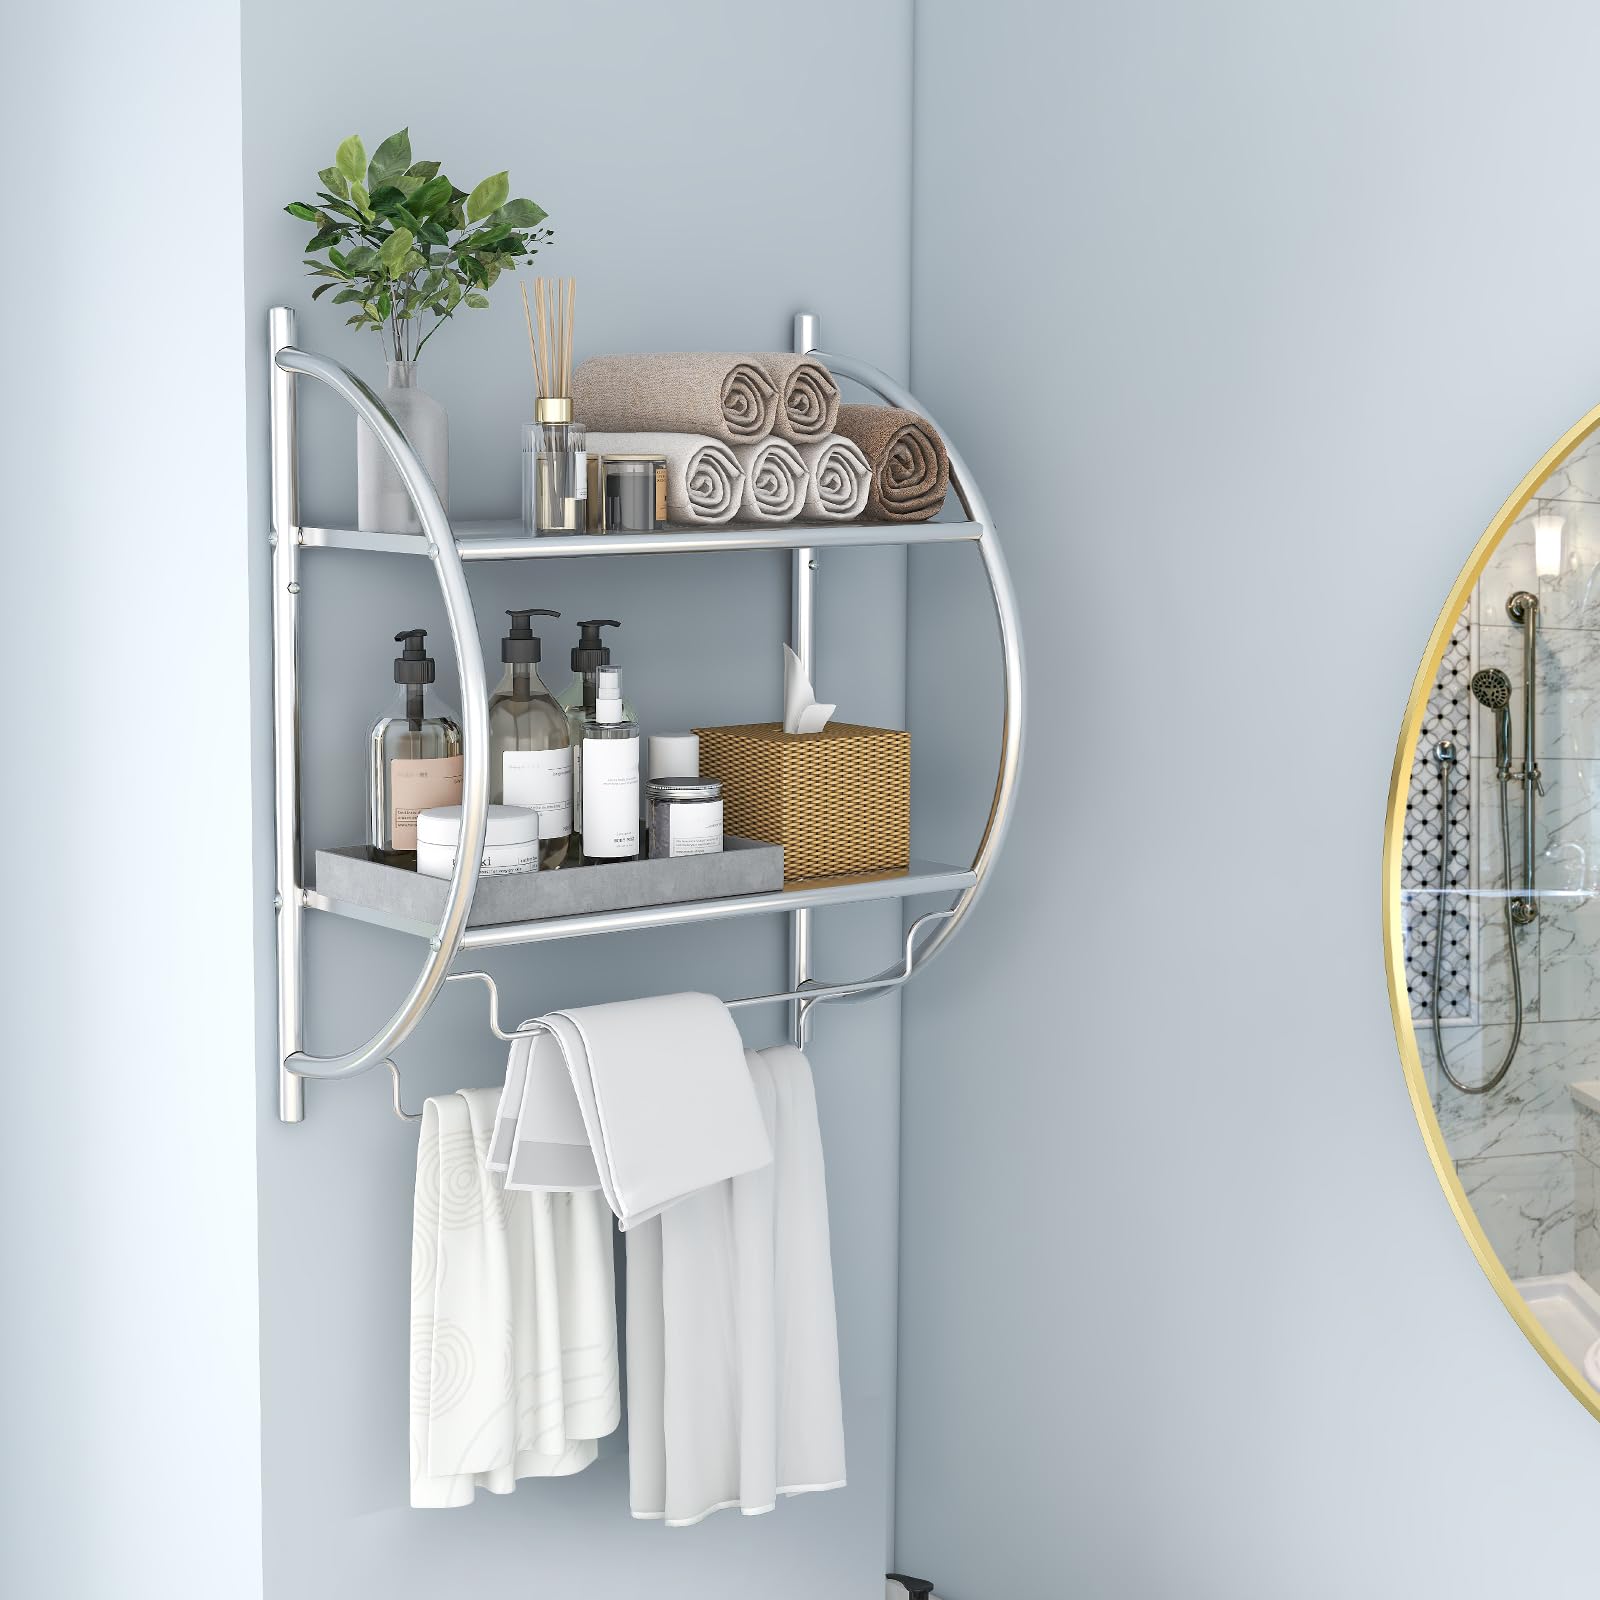 Giantex Bathroom Shelf with Towel Rack - 2 Tier Rustproof Over The Toilet Storage Shelf